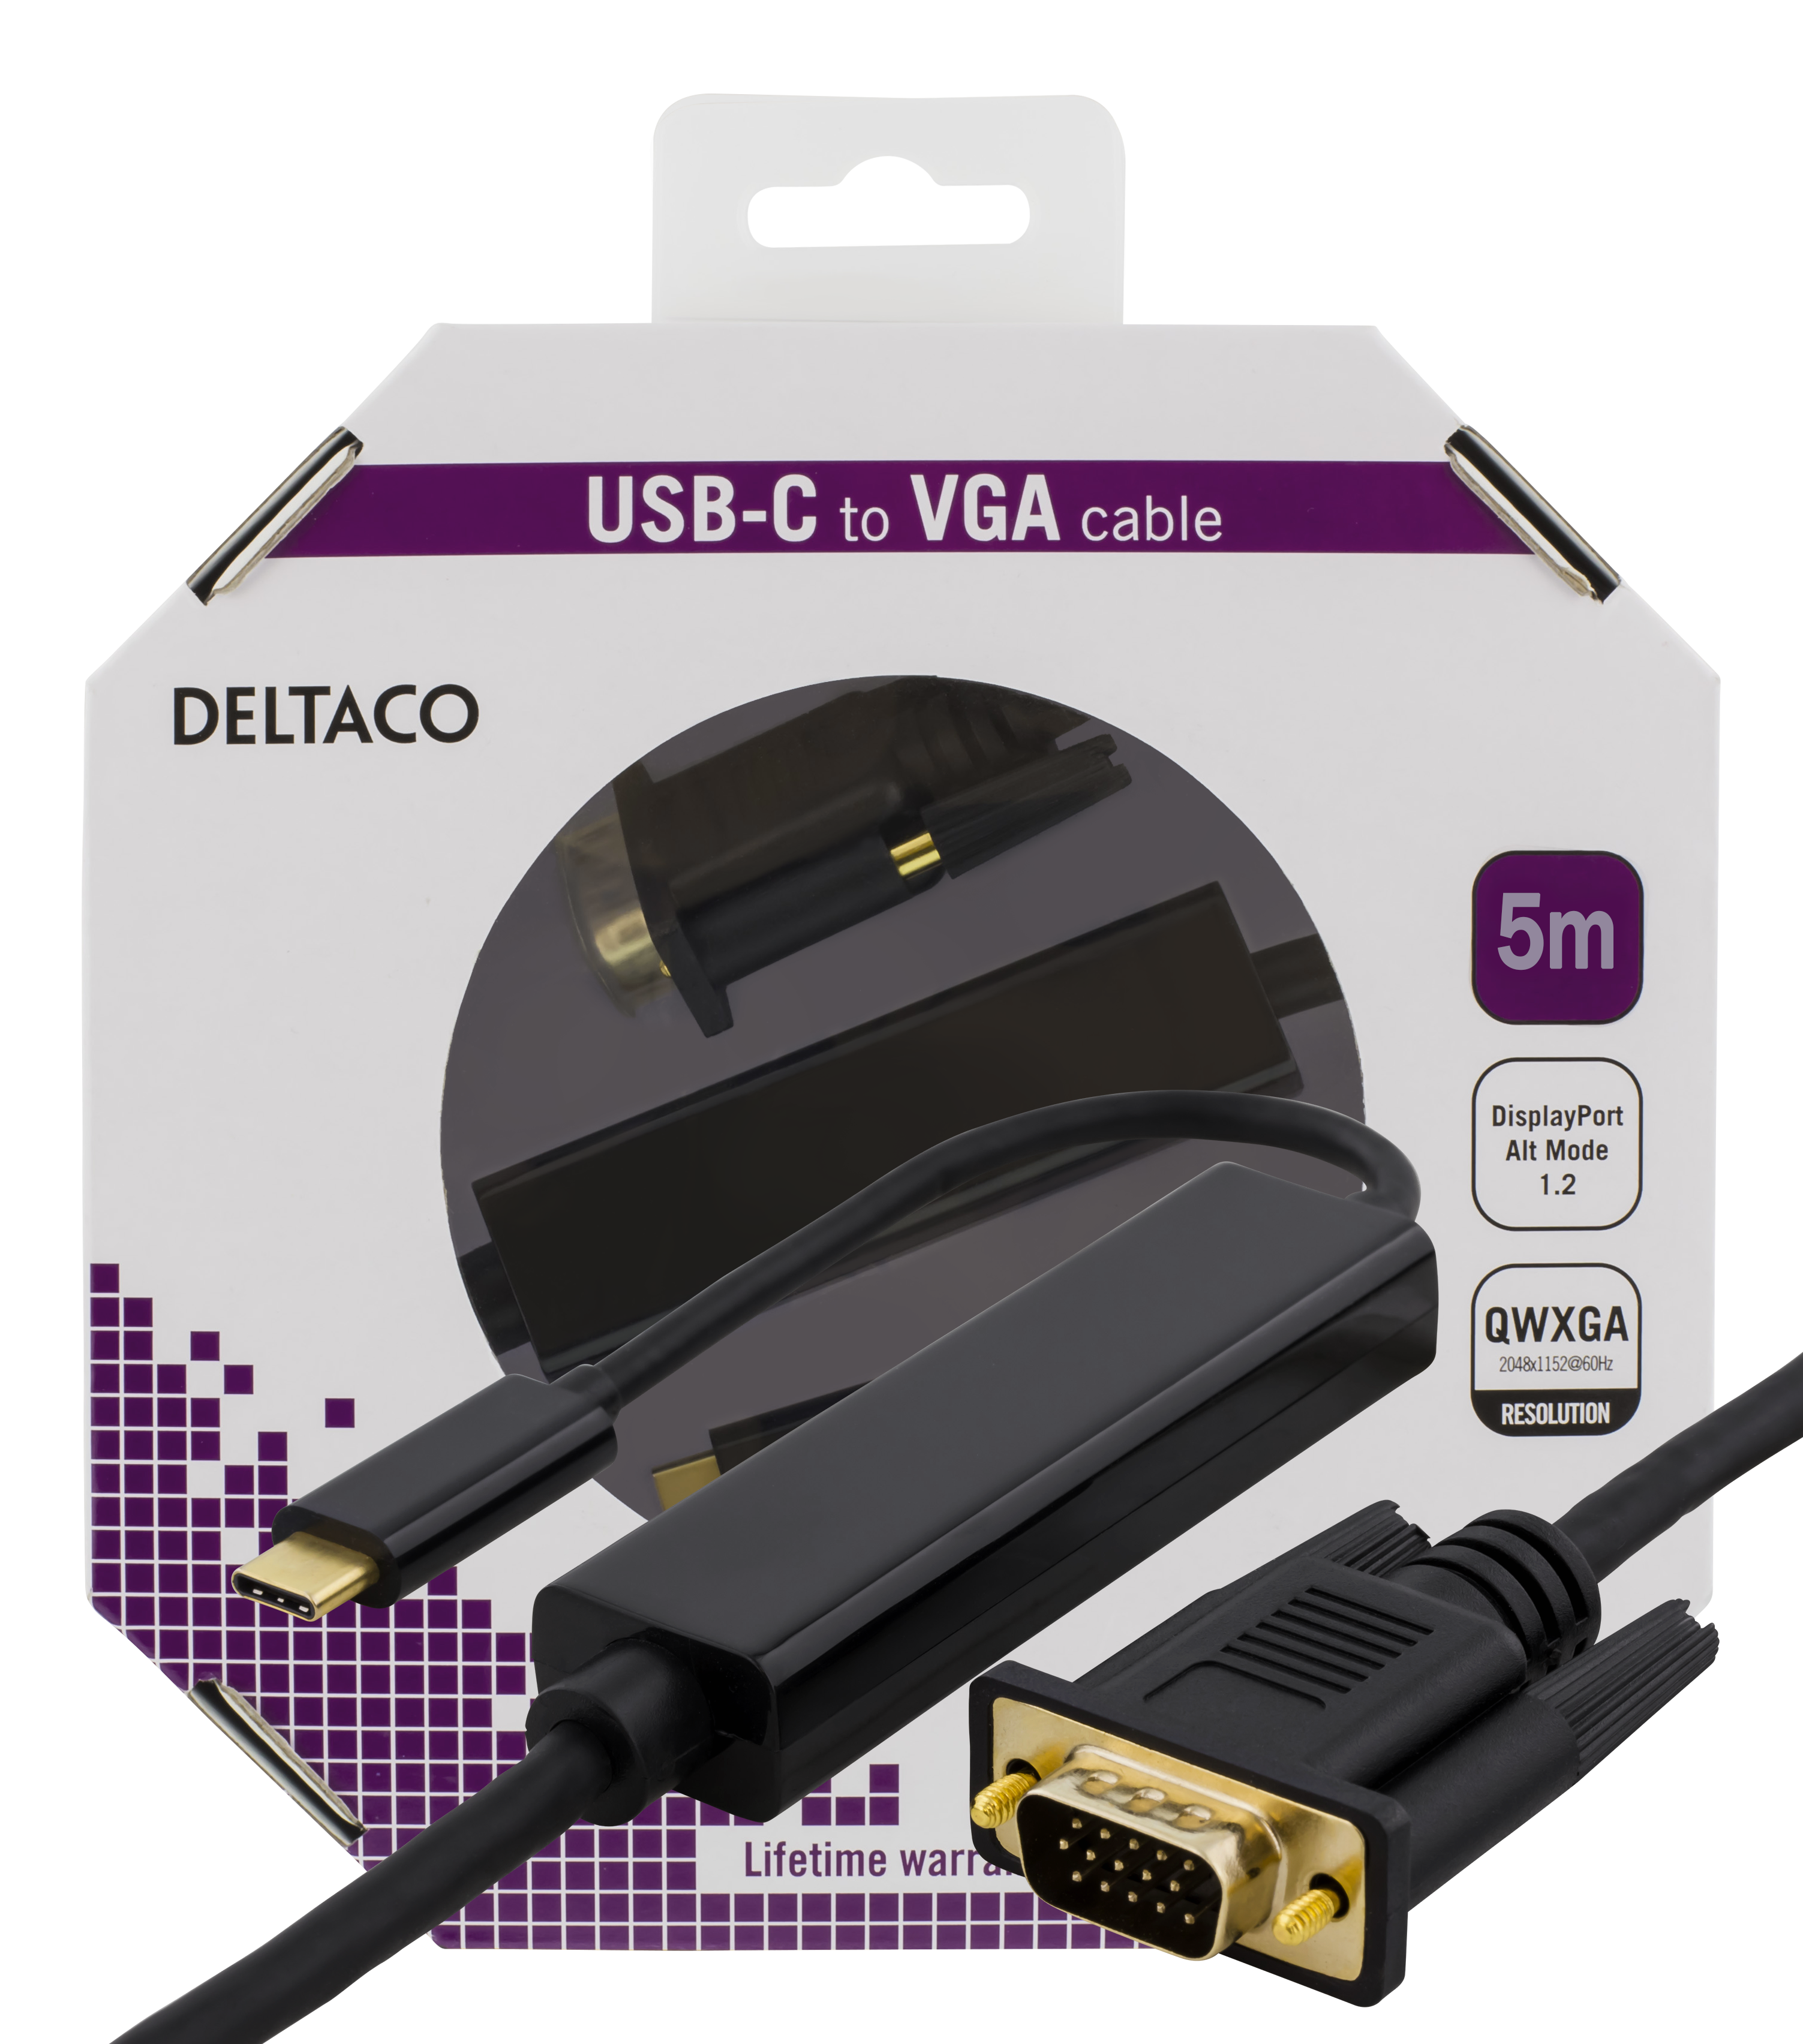 Cable DELTACO USB-C - VGA, QWXGA 2048x1152 60Hz, 5m, DP 1.2 Alt Mode, black / USBC-1089-K